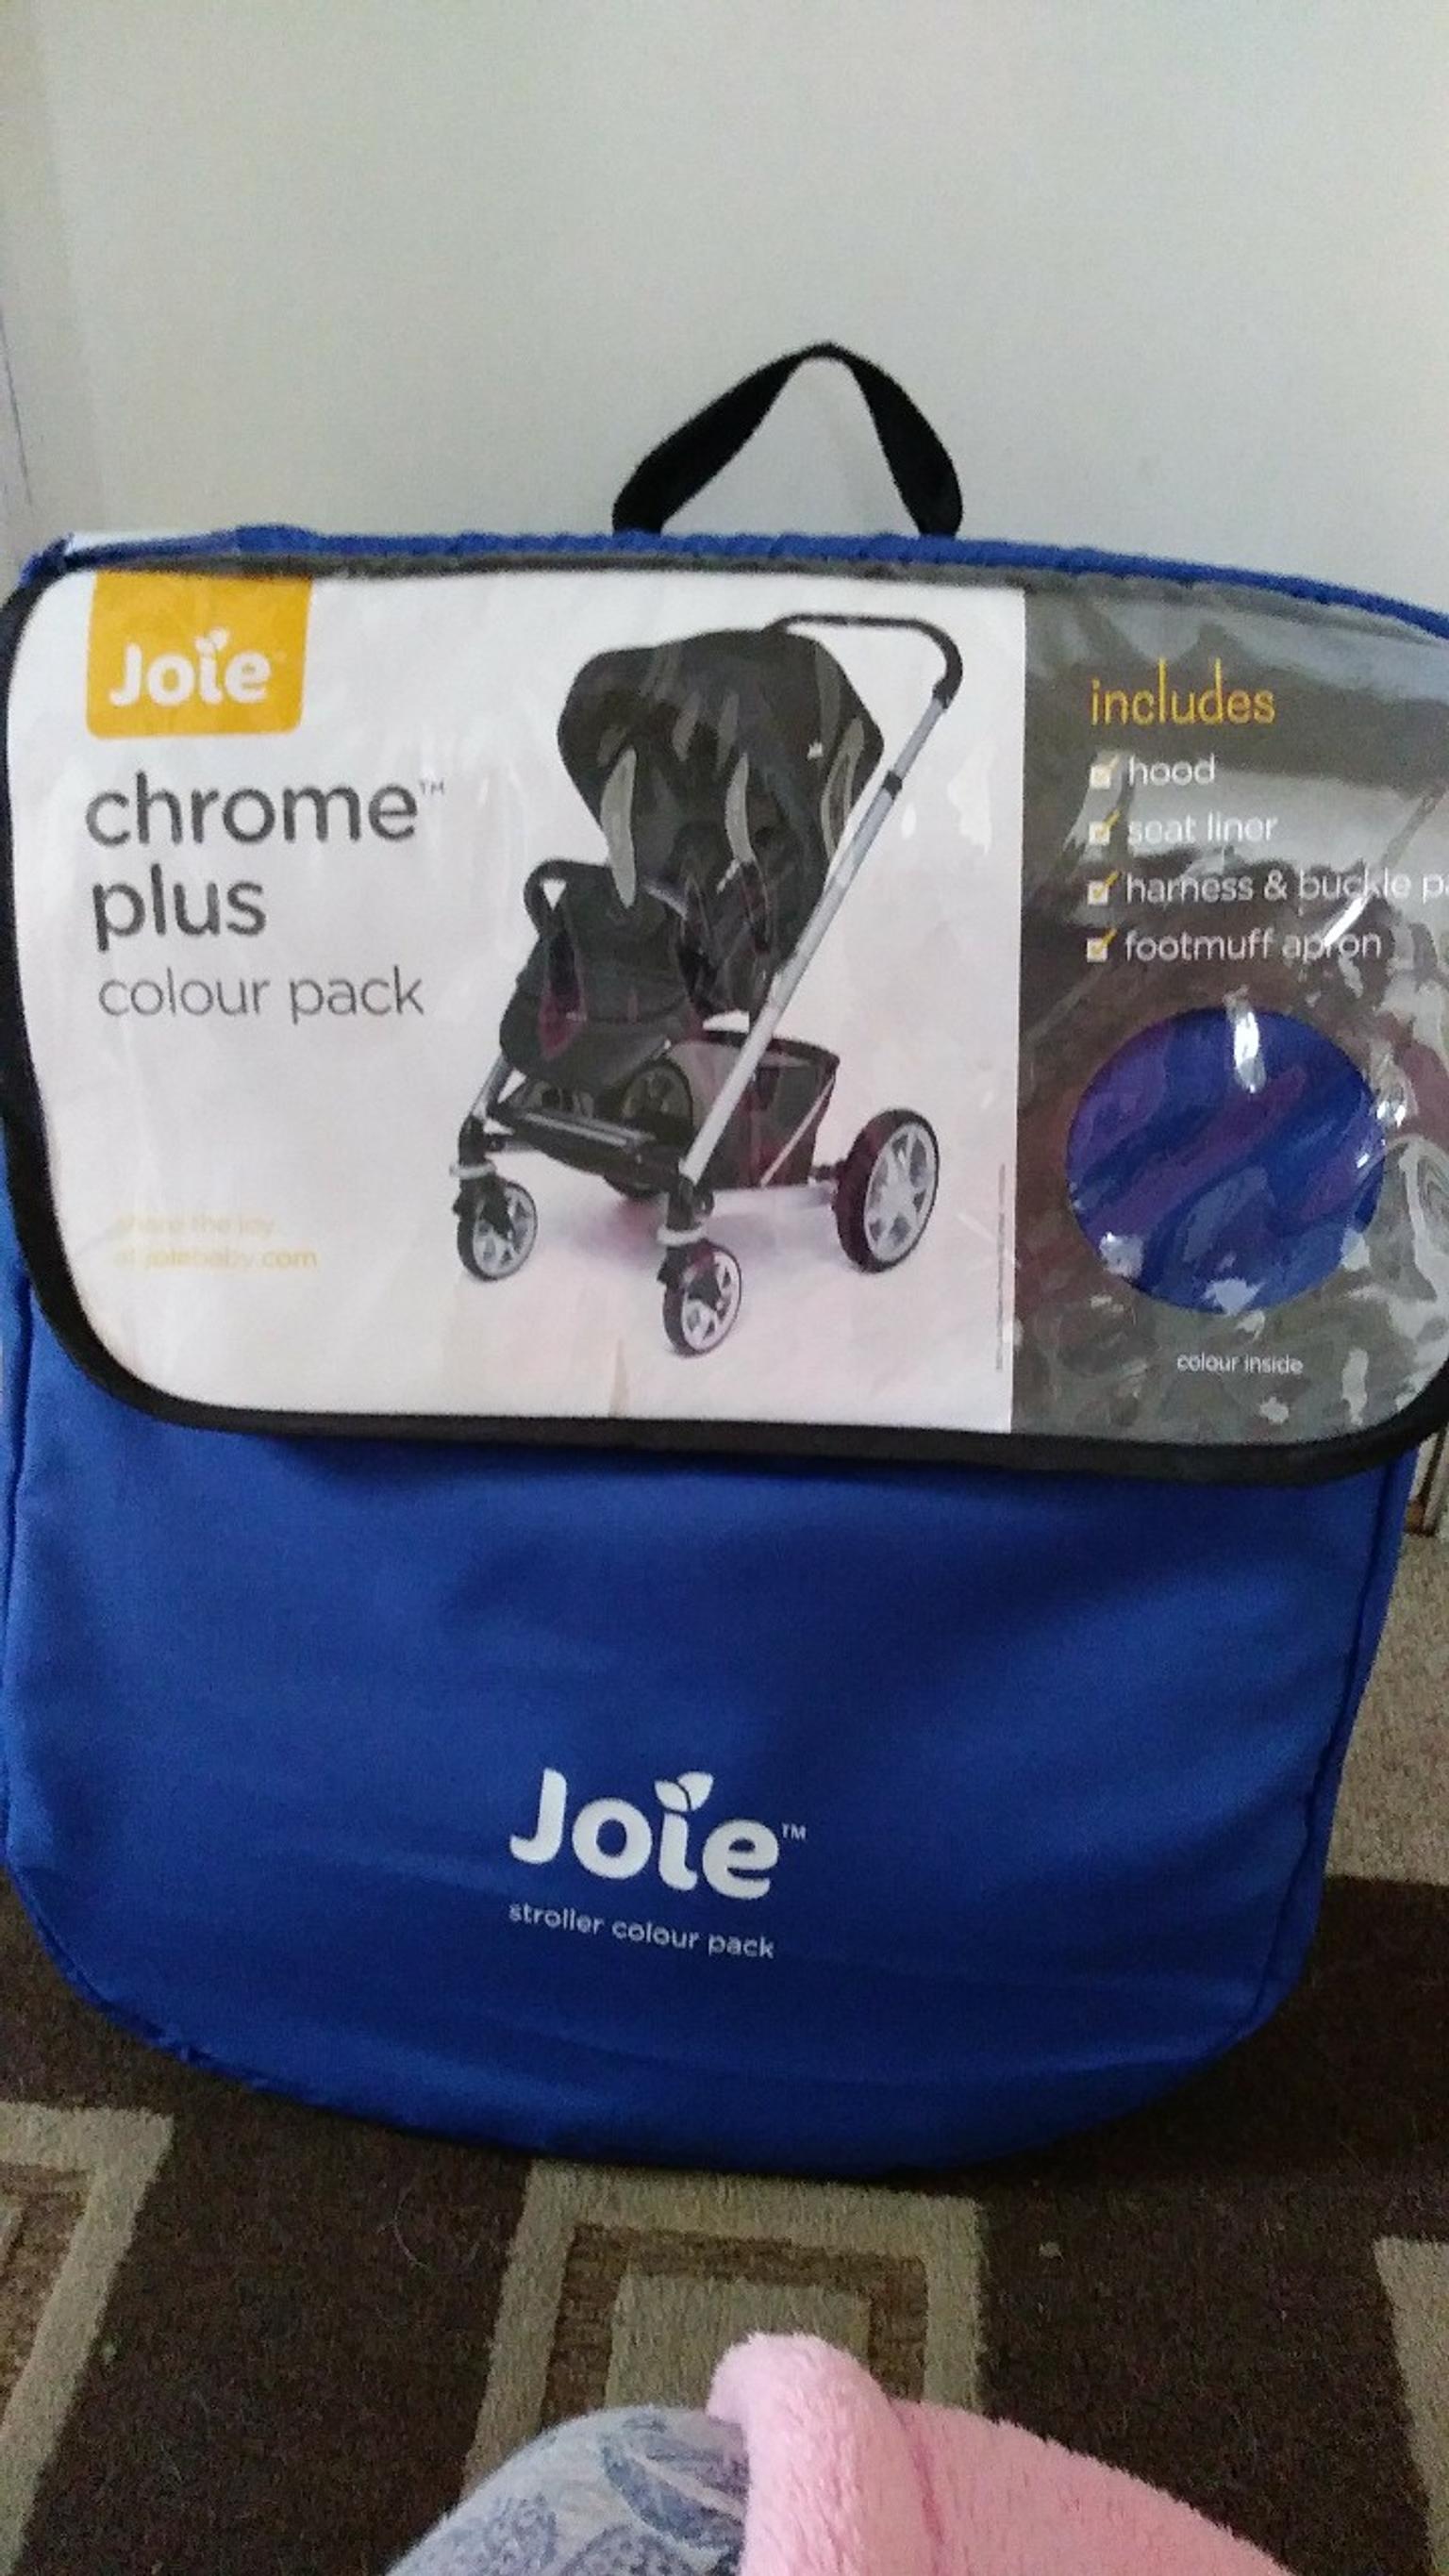 joie chrome dlx colour pack